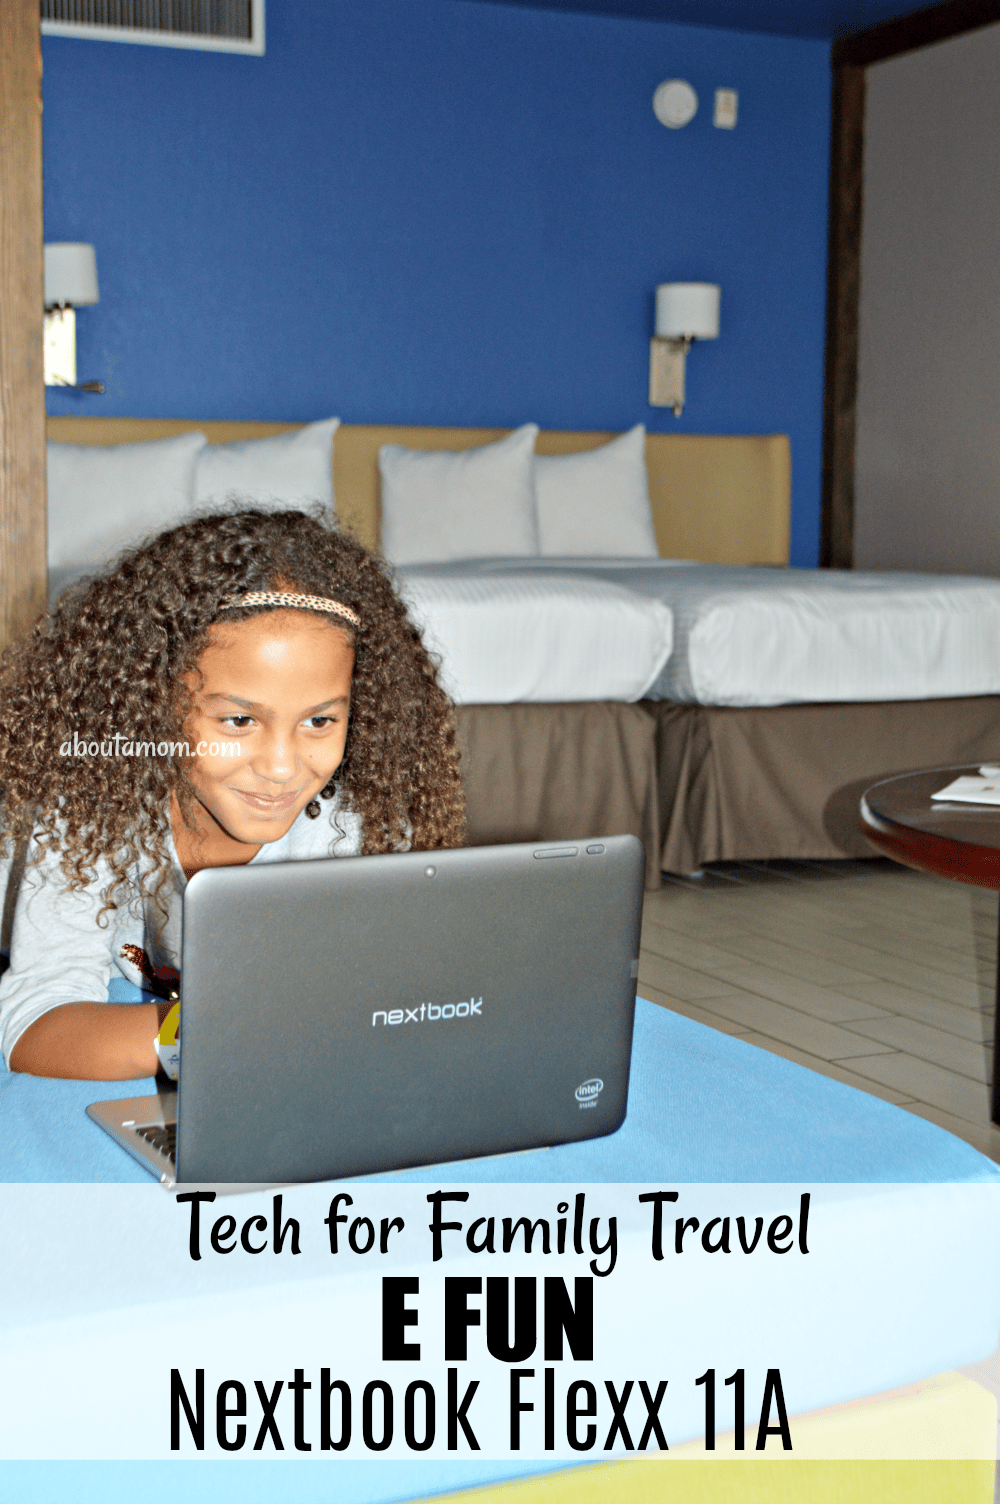 E FUN Nextbook Flexx 11A - Great tech for family travel.